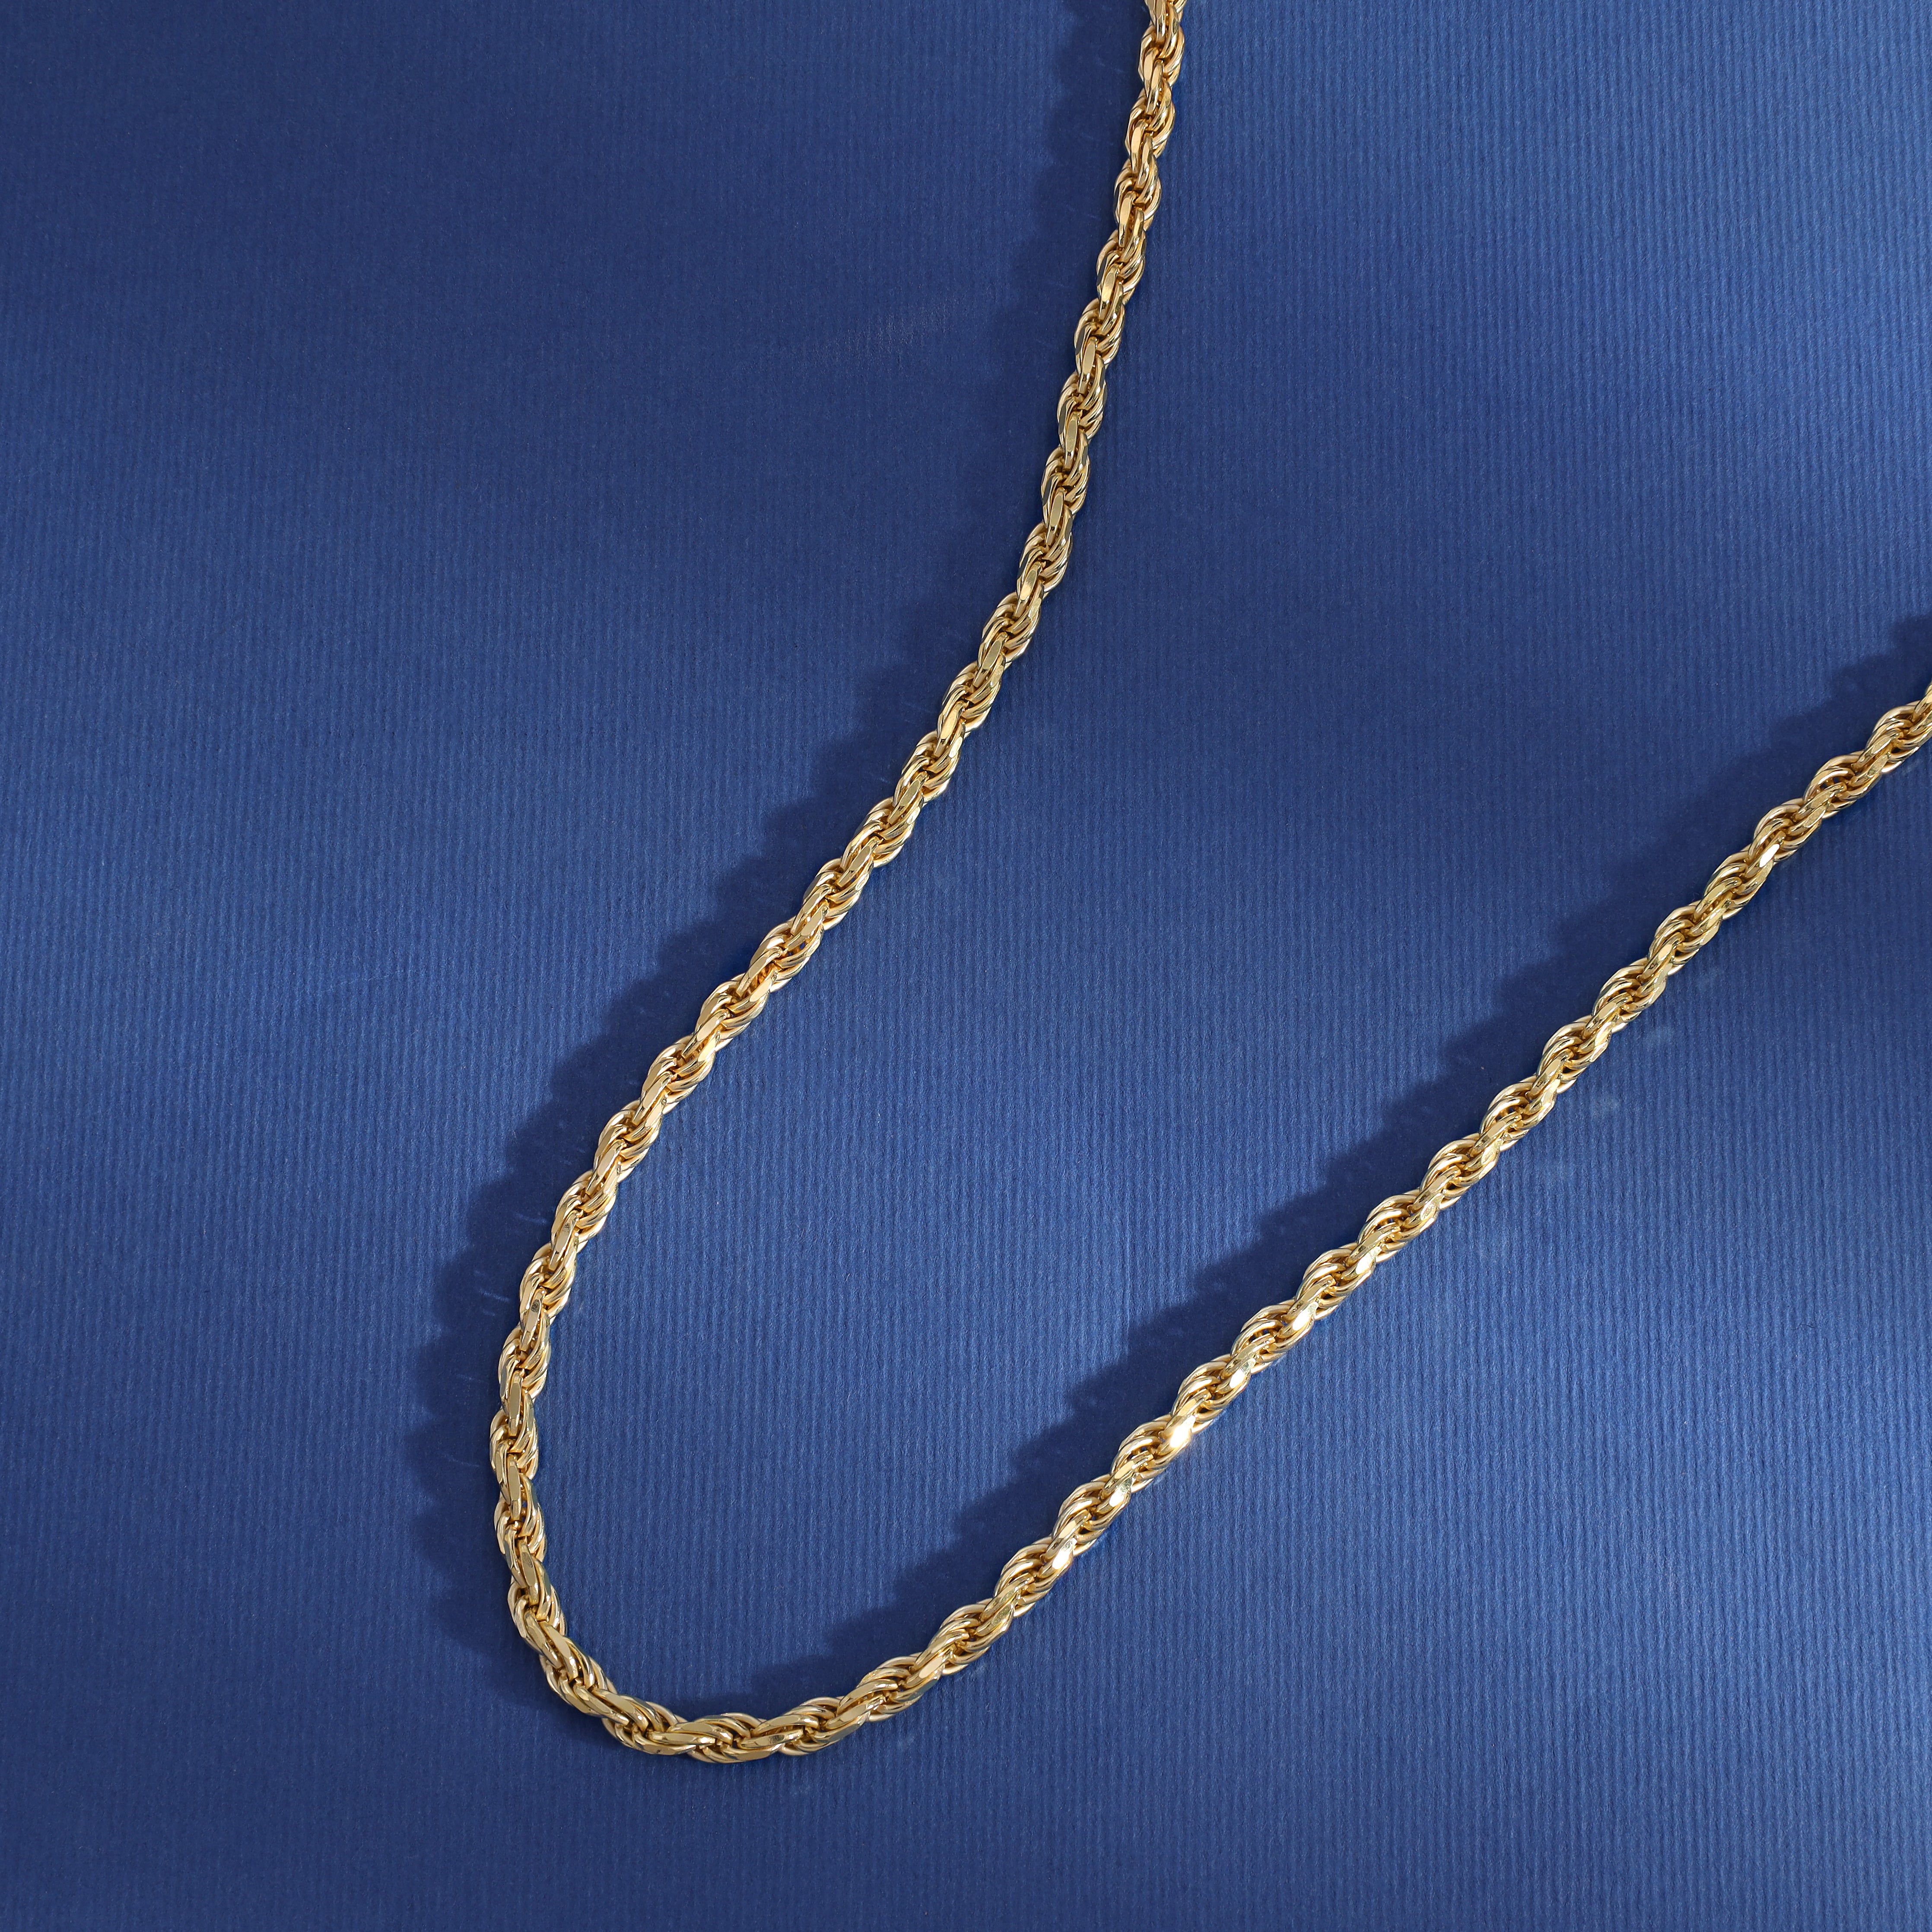 Kordelkette Rope Chain Vergoldet 4mm breit 50cm lang 925 Sterling Silber (K846) - Taipan Schmuck